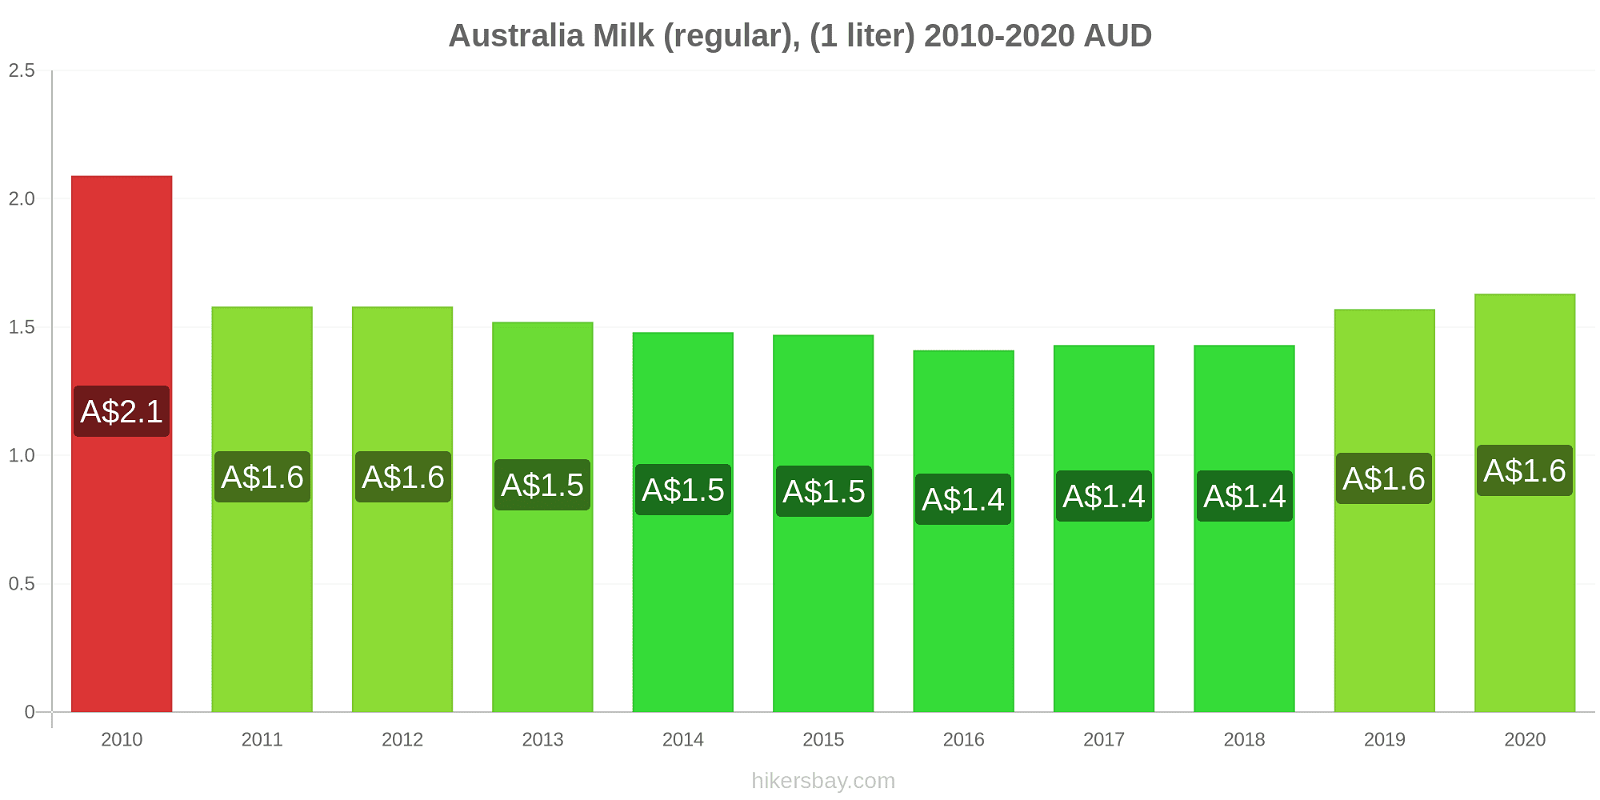 Australia price changes Milk (regular), (1 liter) hikersbay.com